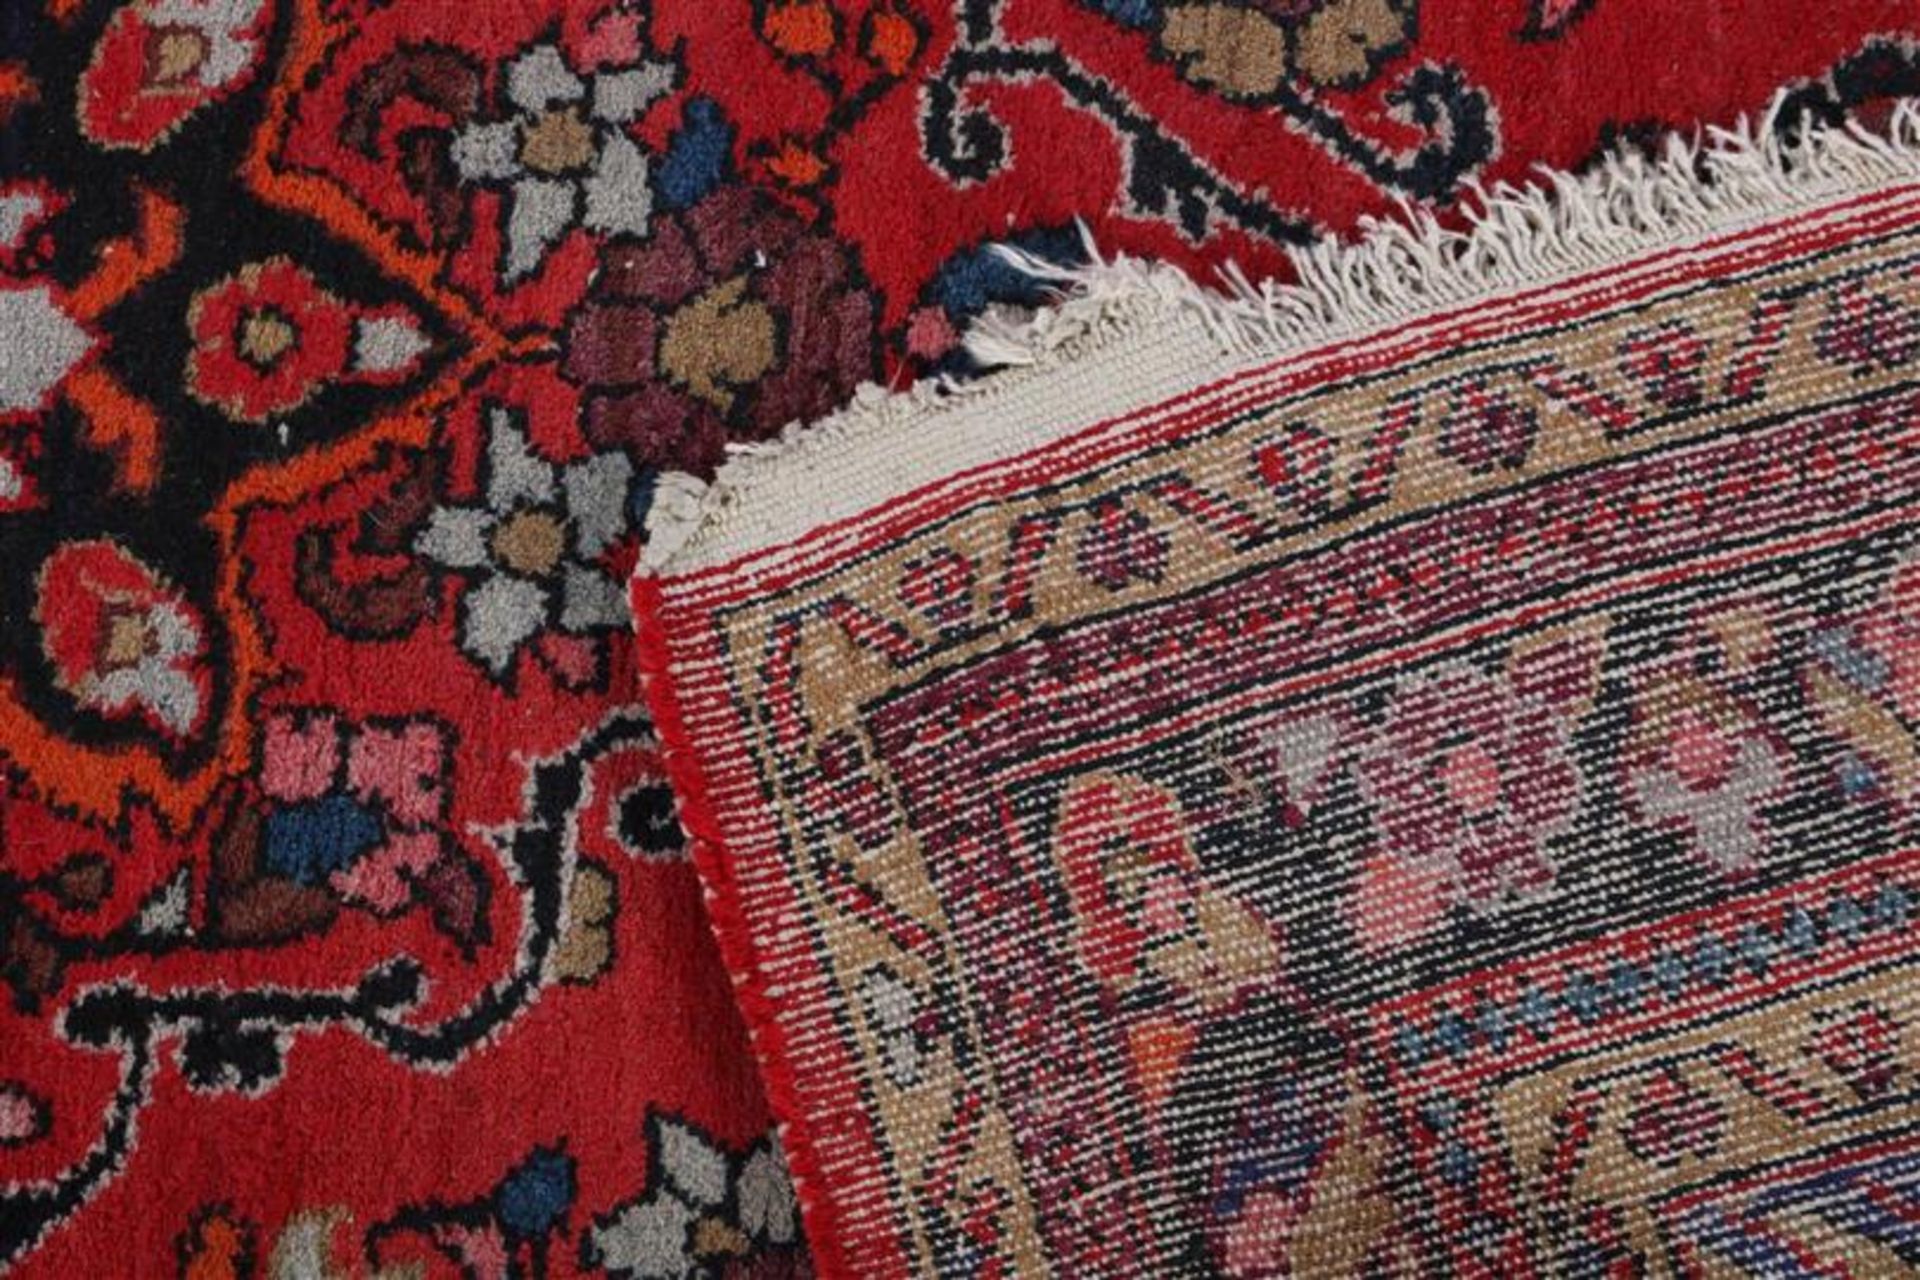 Hand-knotted Oriental rug, 205x132 cm - Bild 3 aus 3